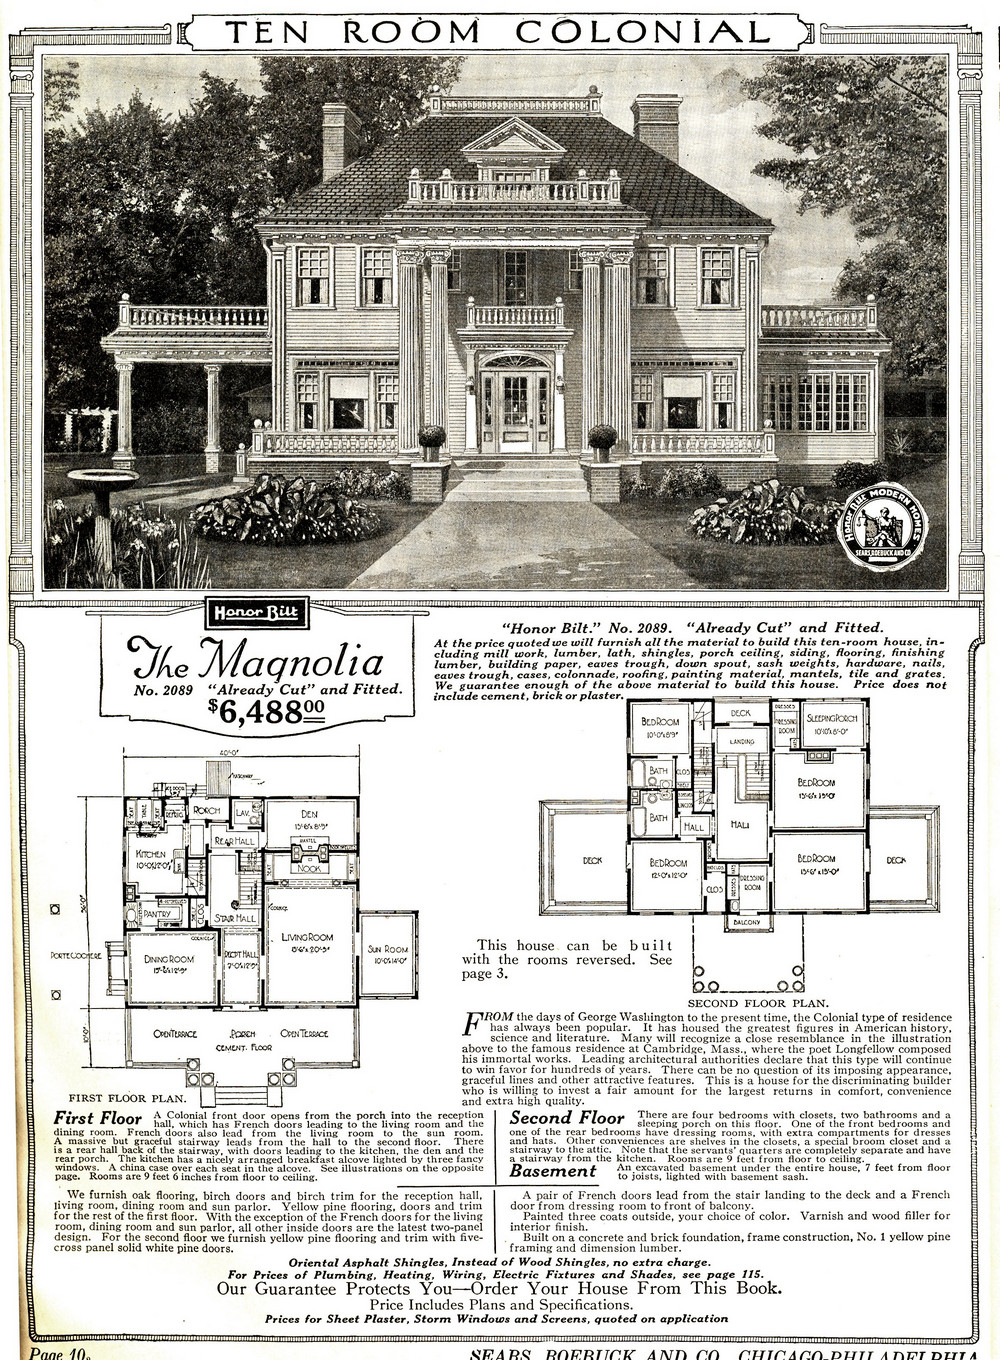 Дом по почте: через каталоги Sears продали 75 000 сборных домов за 1908-1940 годы 1